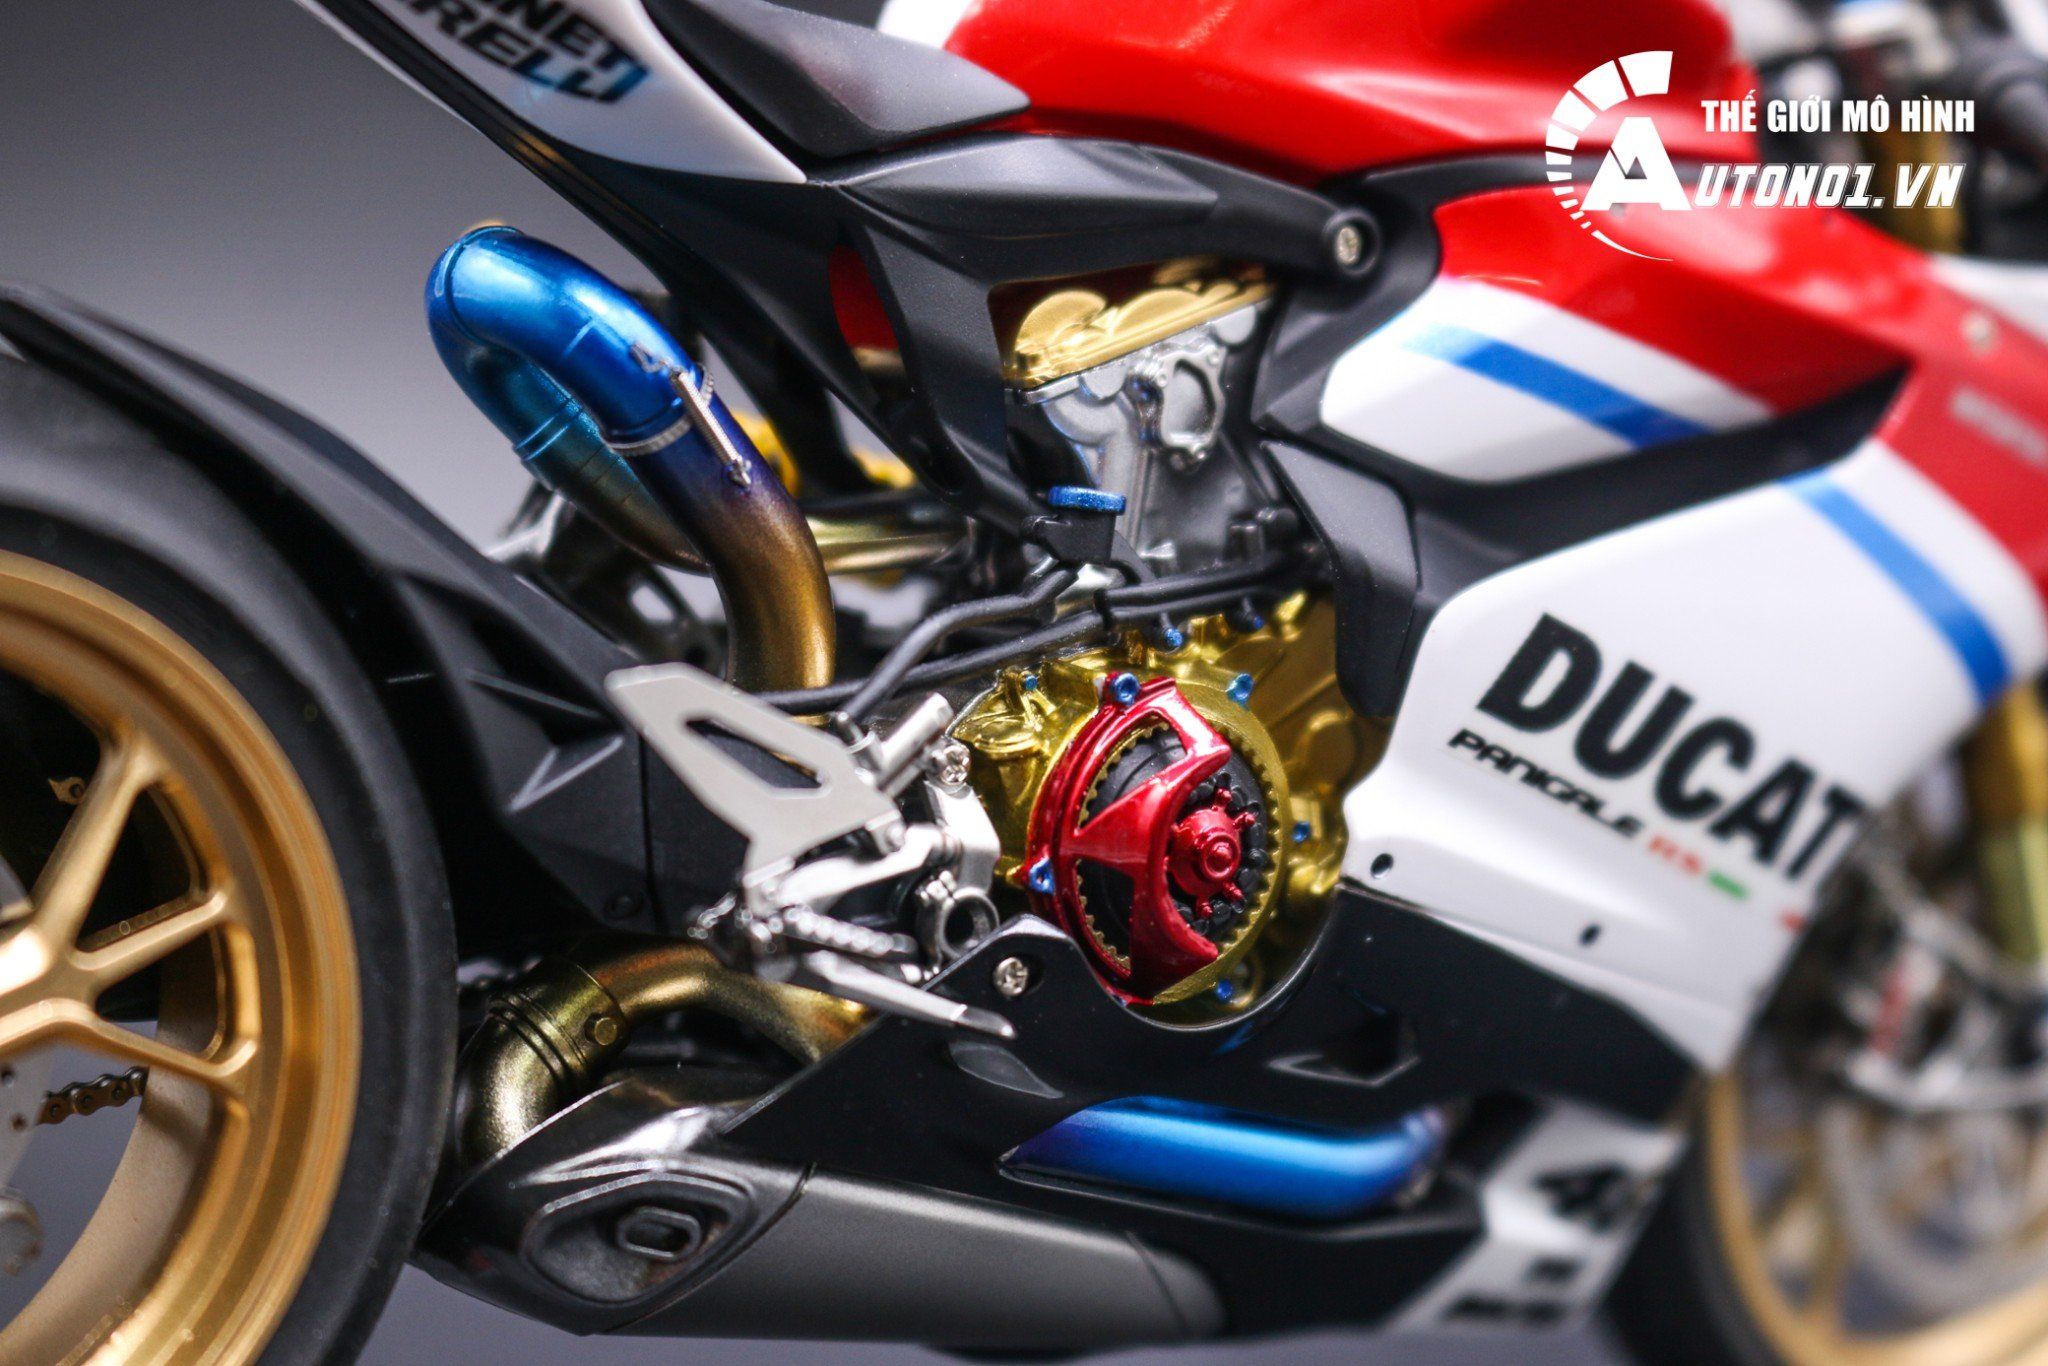  Mô hình Ducati 1199 Panigale S Custom No.46 lên đồ kim loại & nồi massa 1:12 Tamiya D072 